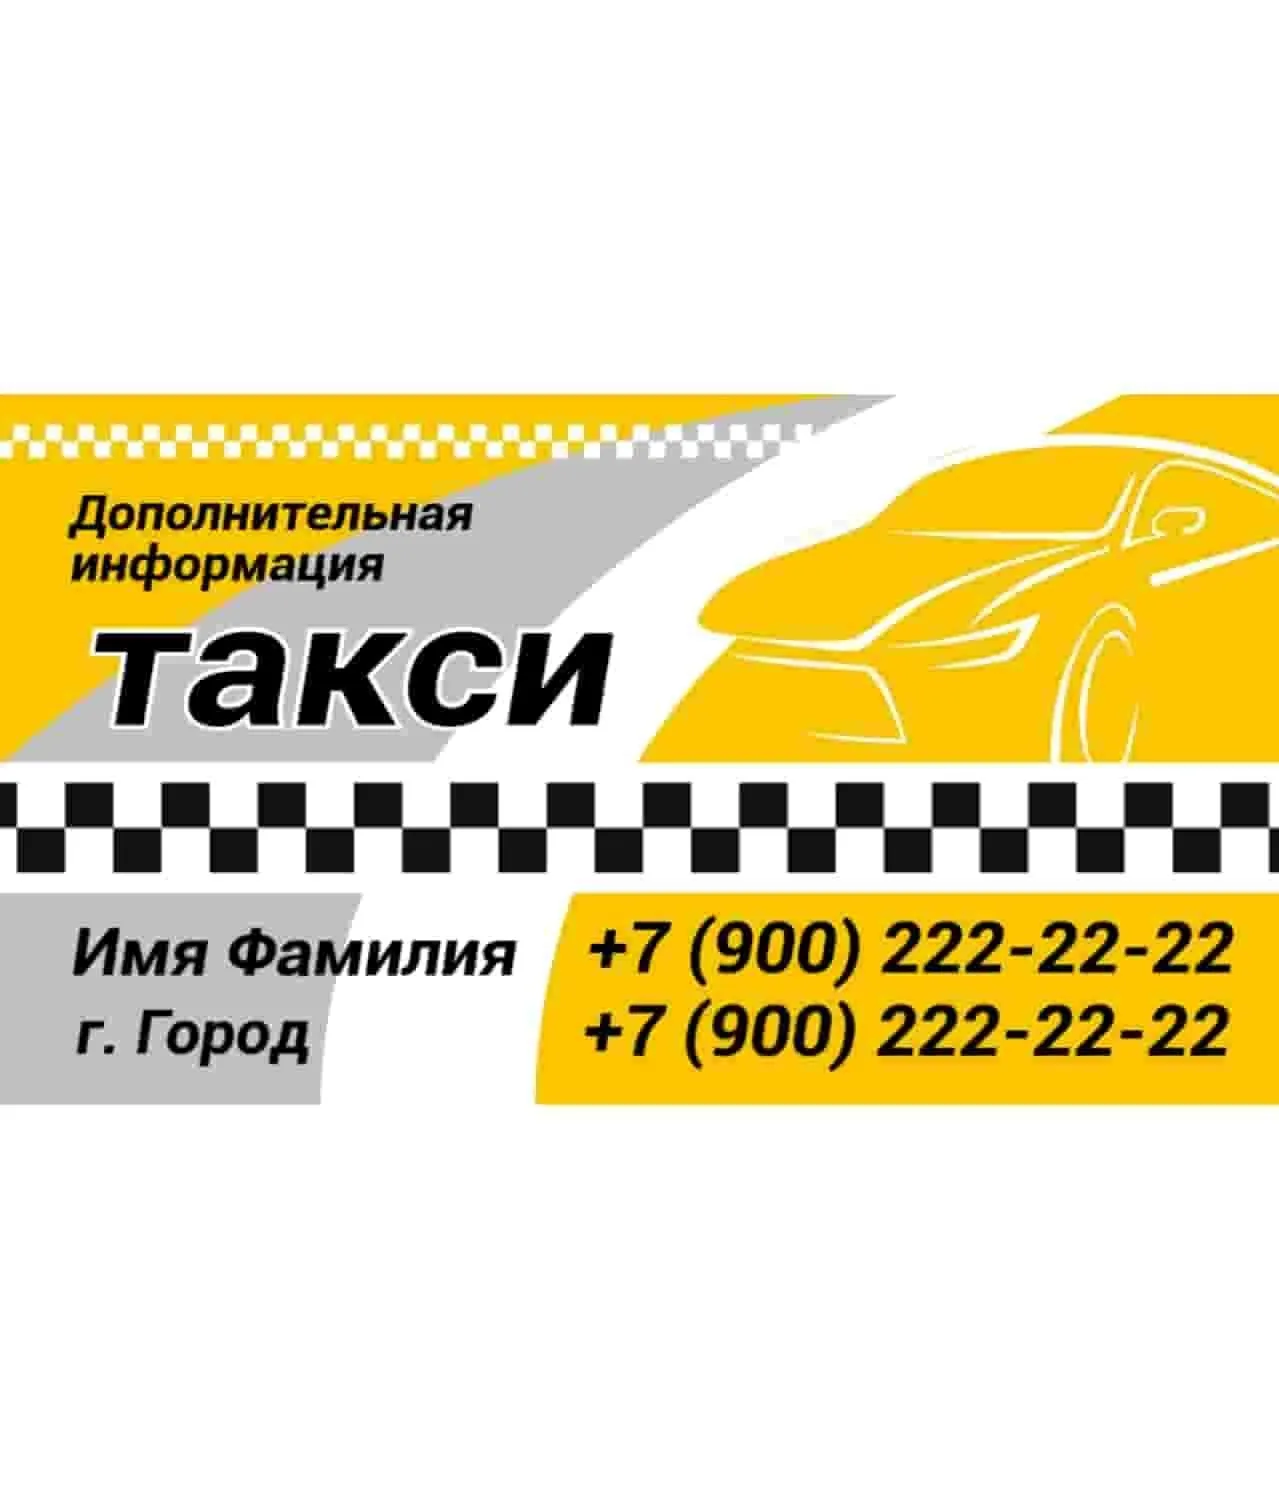 Бесплатные визитки такси. Визитка такси. Макет визитки такси. Макет визитки таксисту. Такси макет.